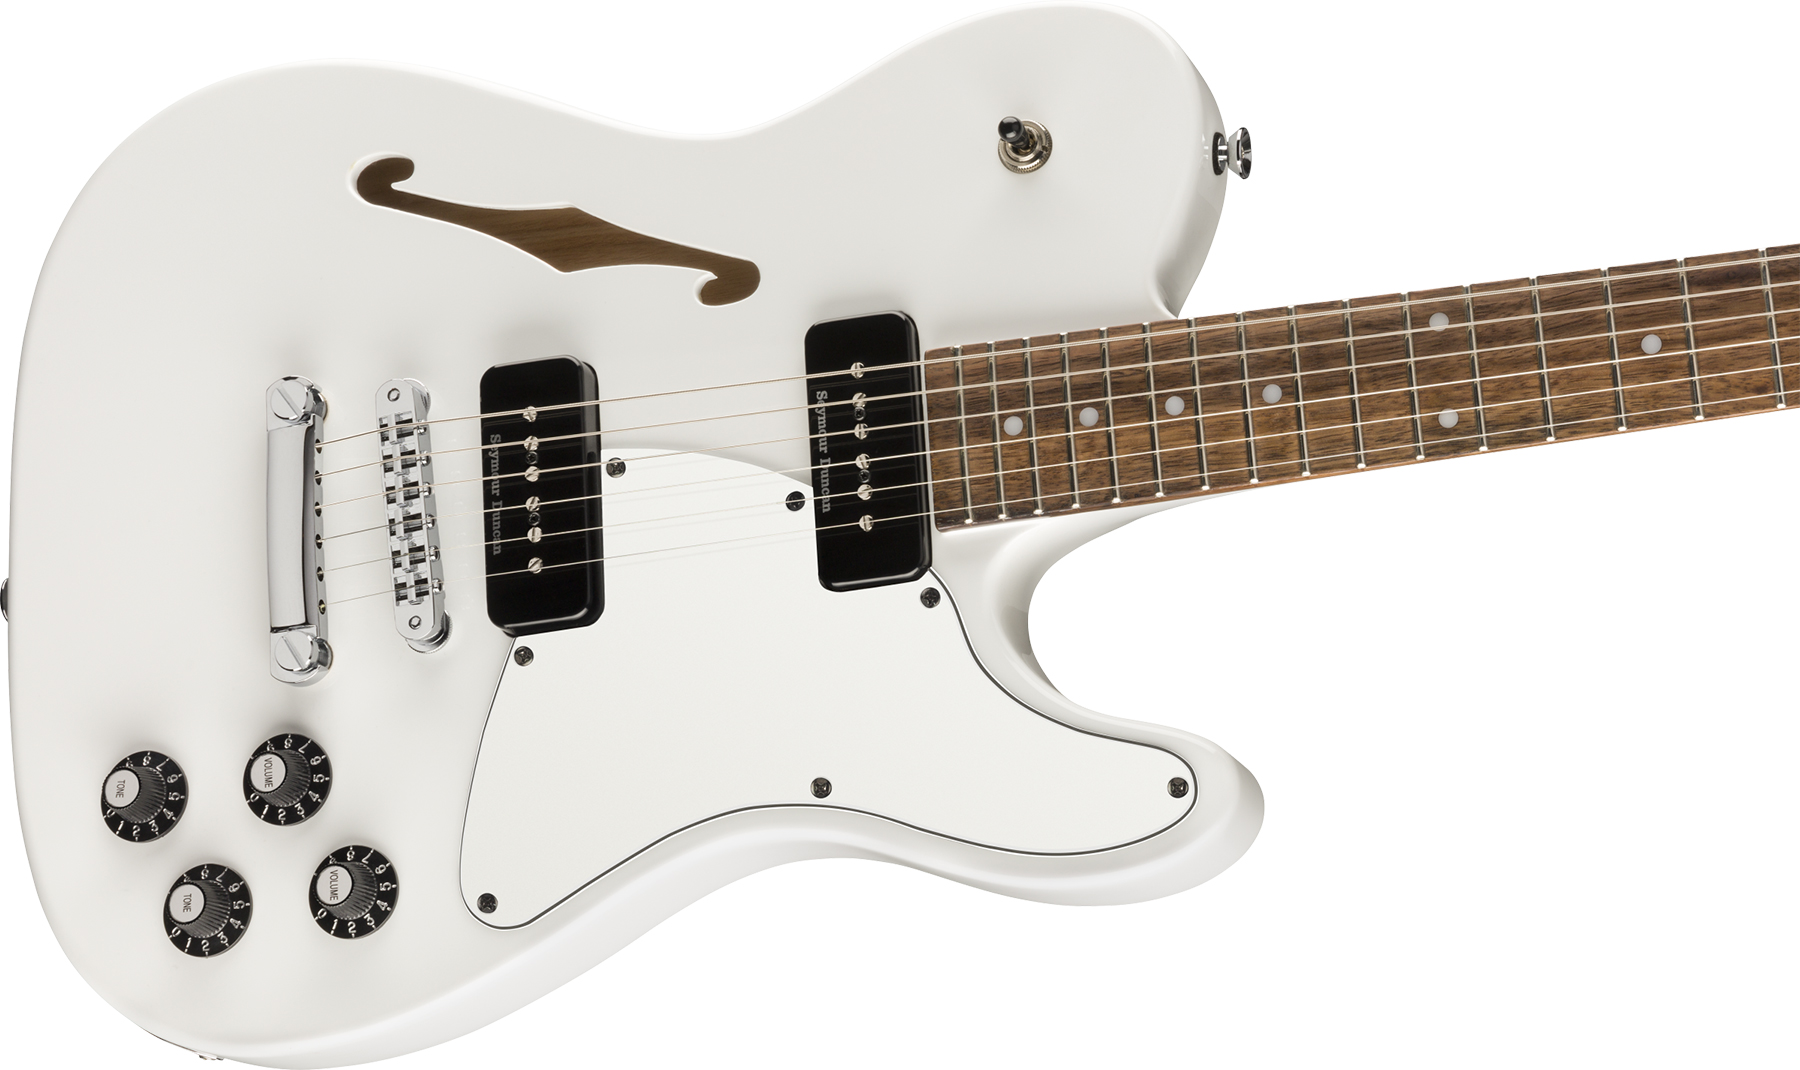 Fender Jim Adkins Tele Ja-90 Mex Signature 2p90 Lau - White - Guitarra eléctrica con forma de tel - Variation 2